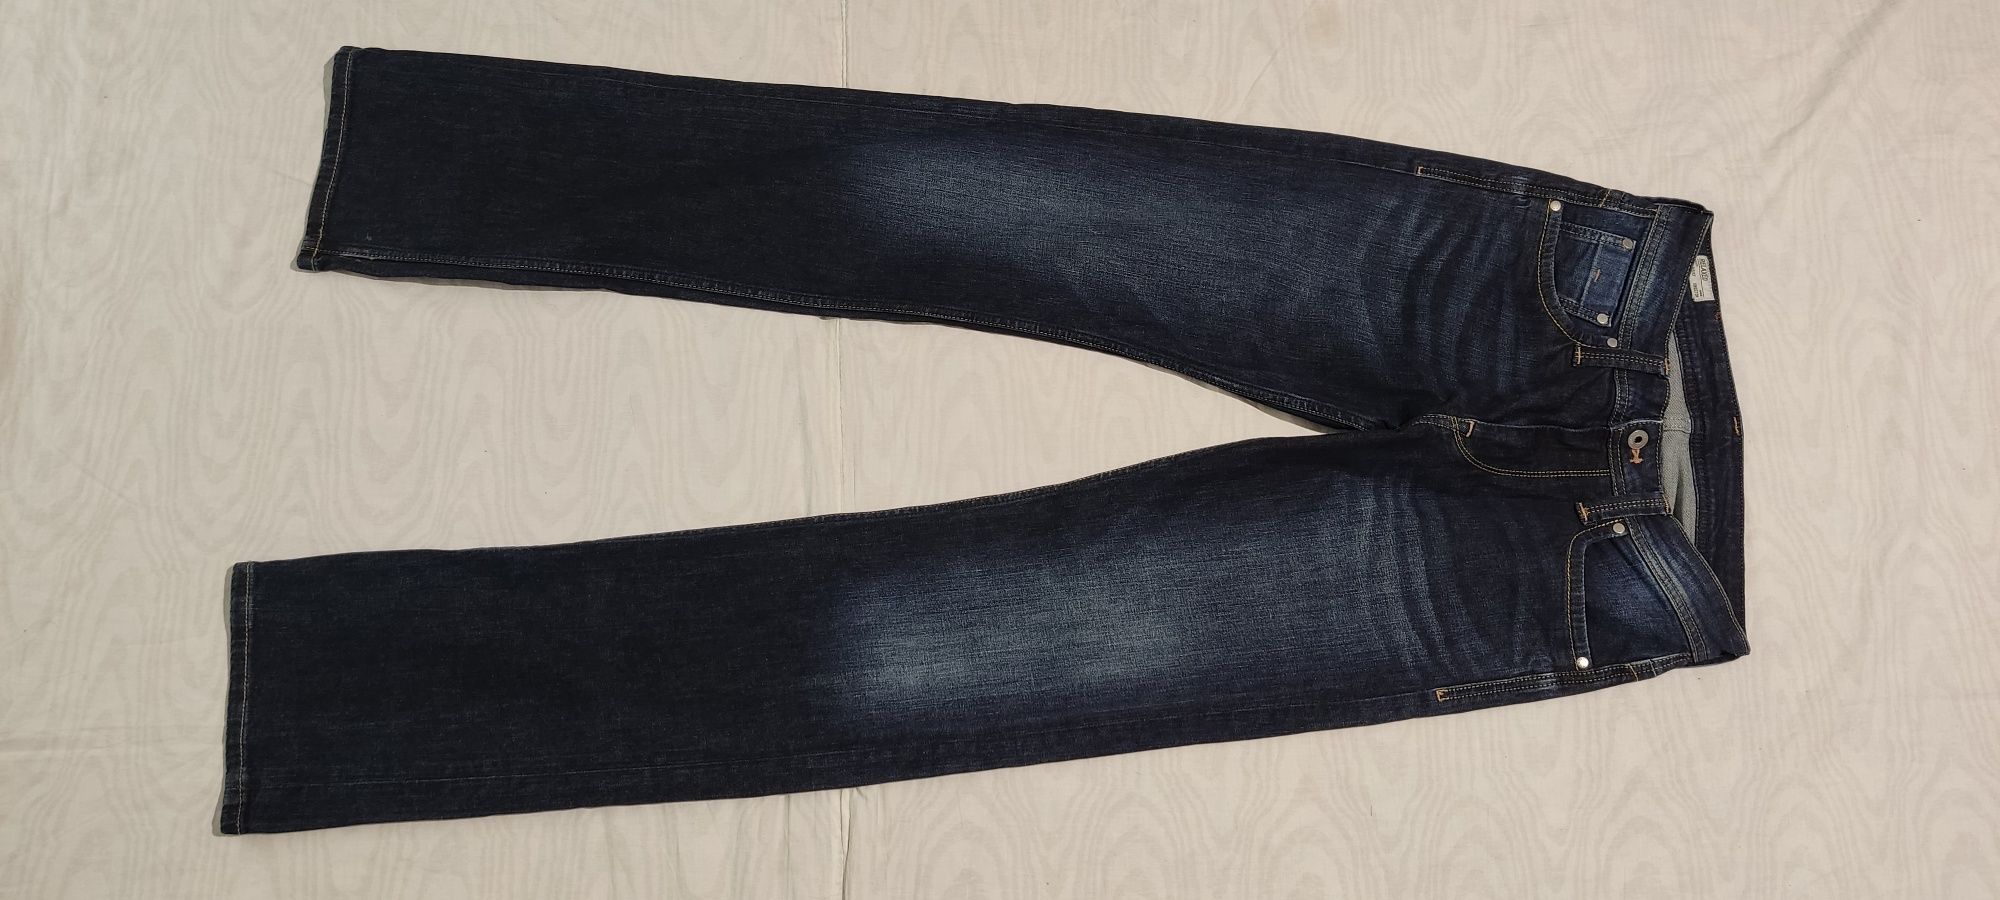 Blugi Pepe Jeans London Kingston jeans jeanși pantaloni